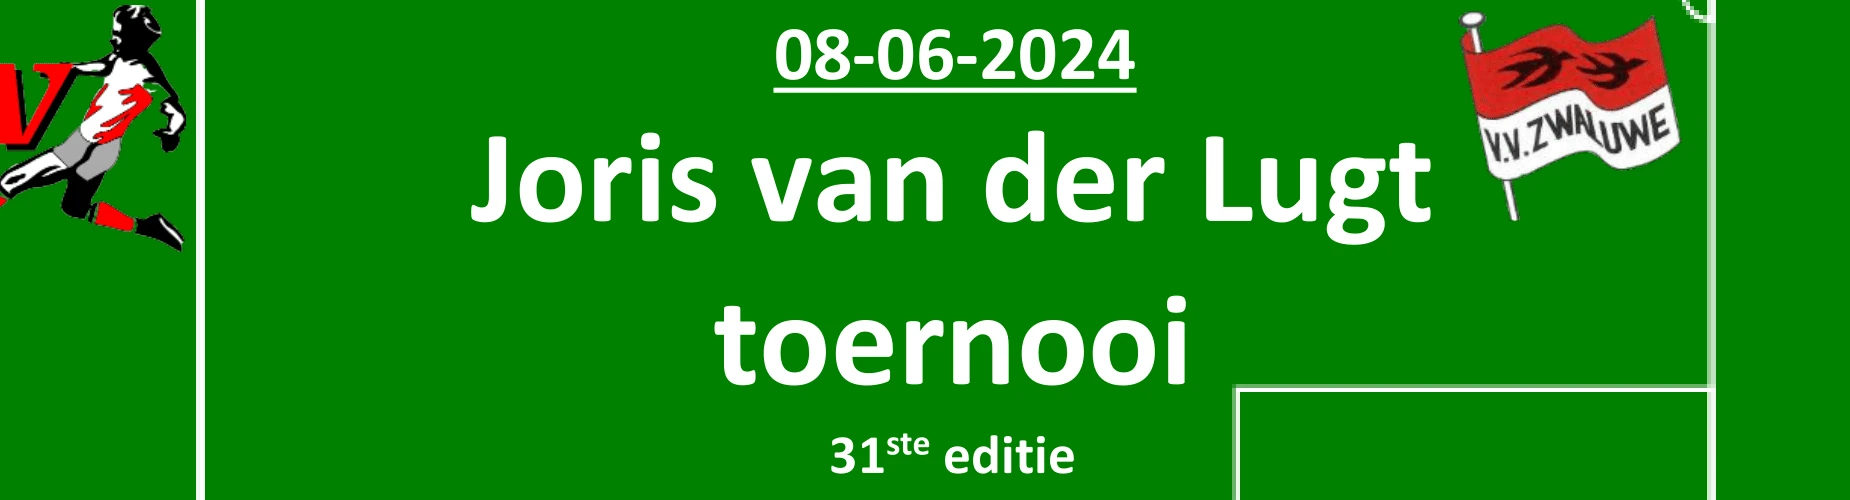 Banner - O12 - Joris van der Lugt Toernooi - vv Zwaluwe - Lage Zwaluwe